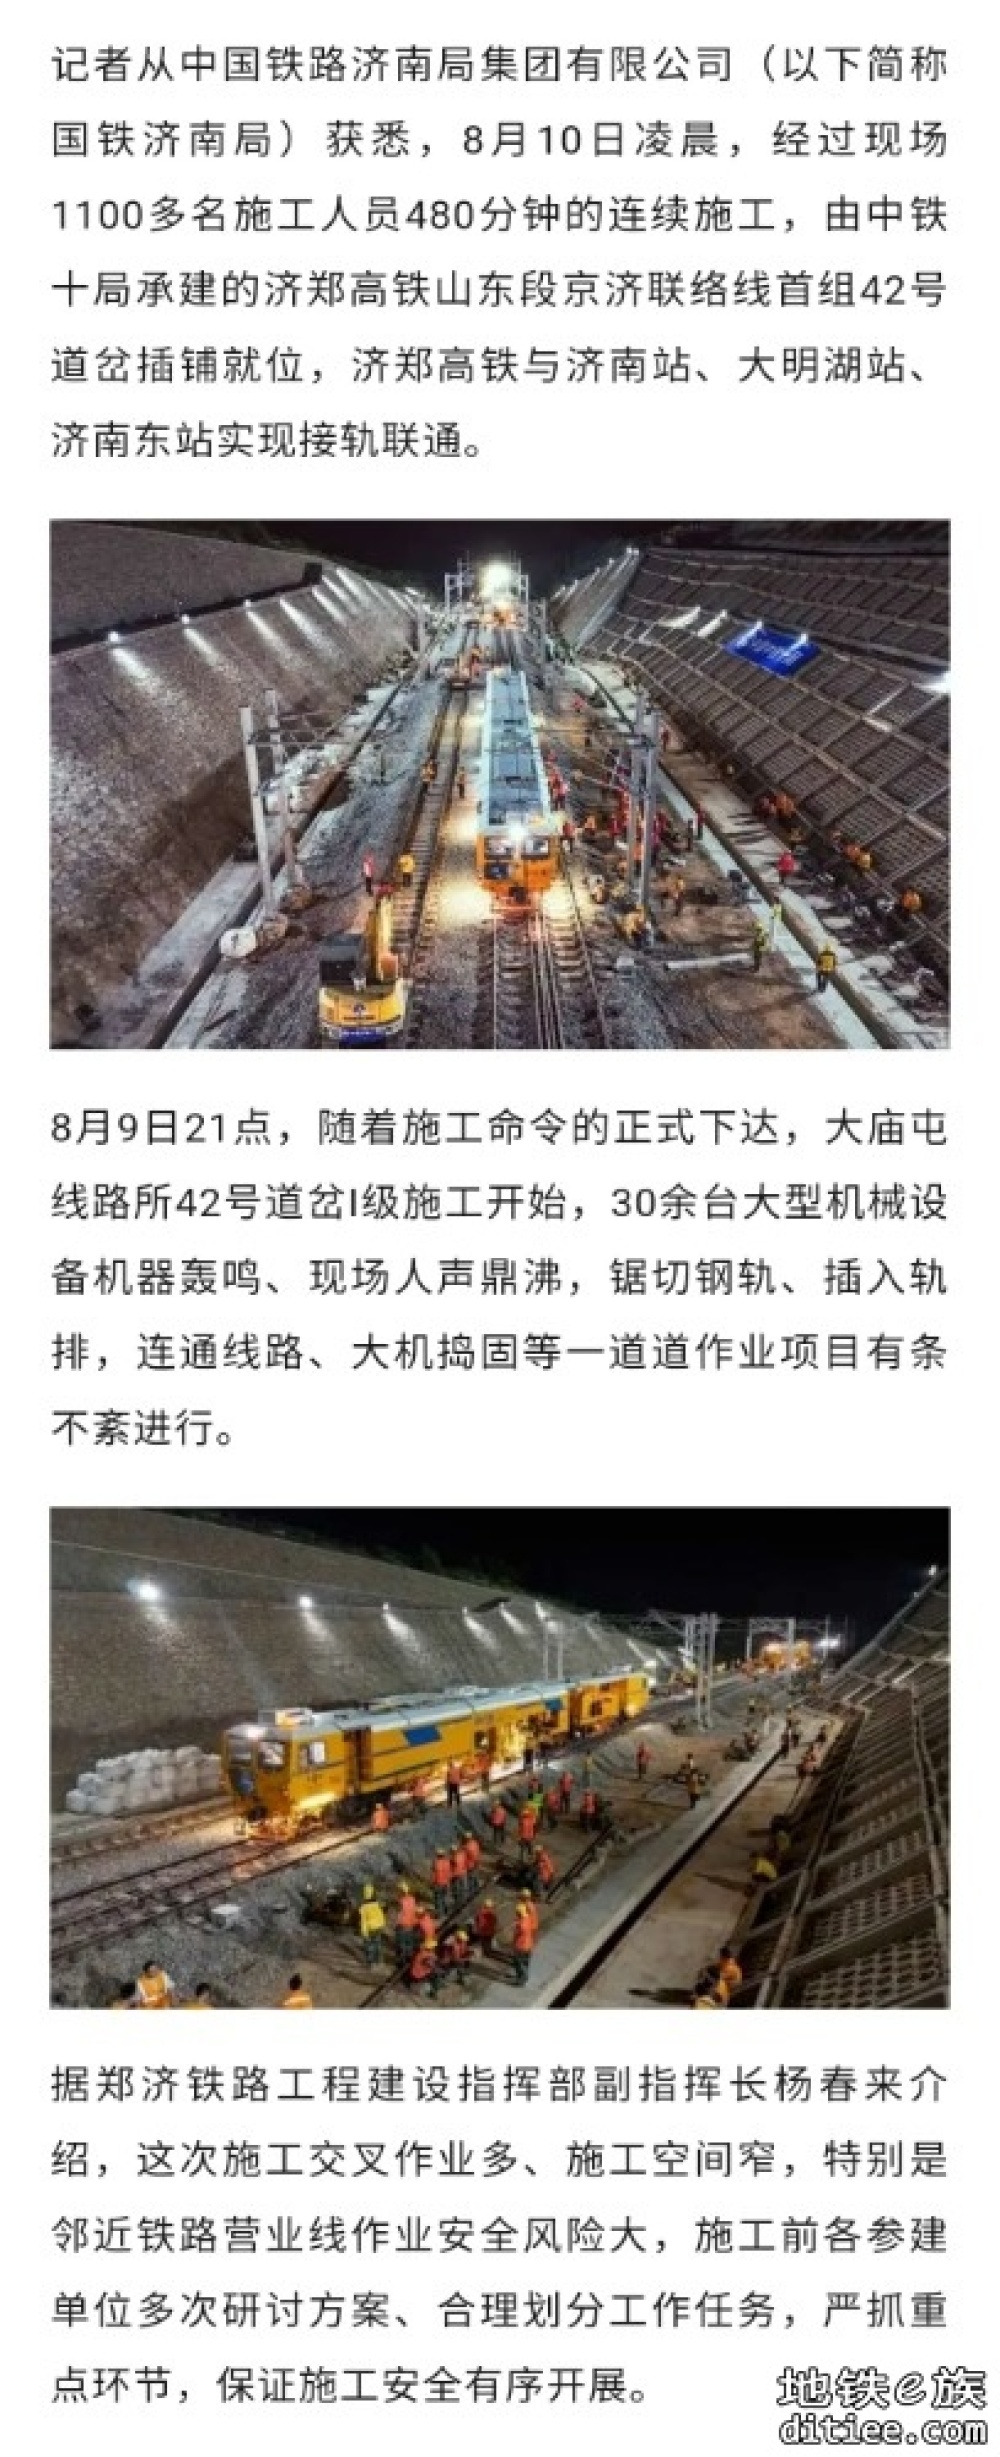 济郑高铁与济南站、大明湖站、济南东站实现接轨联通